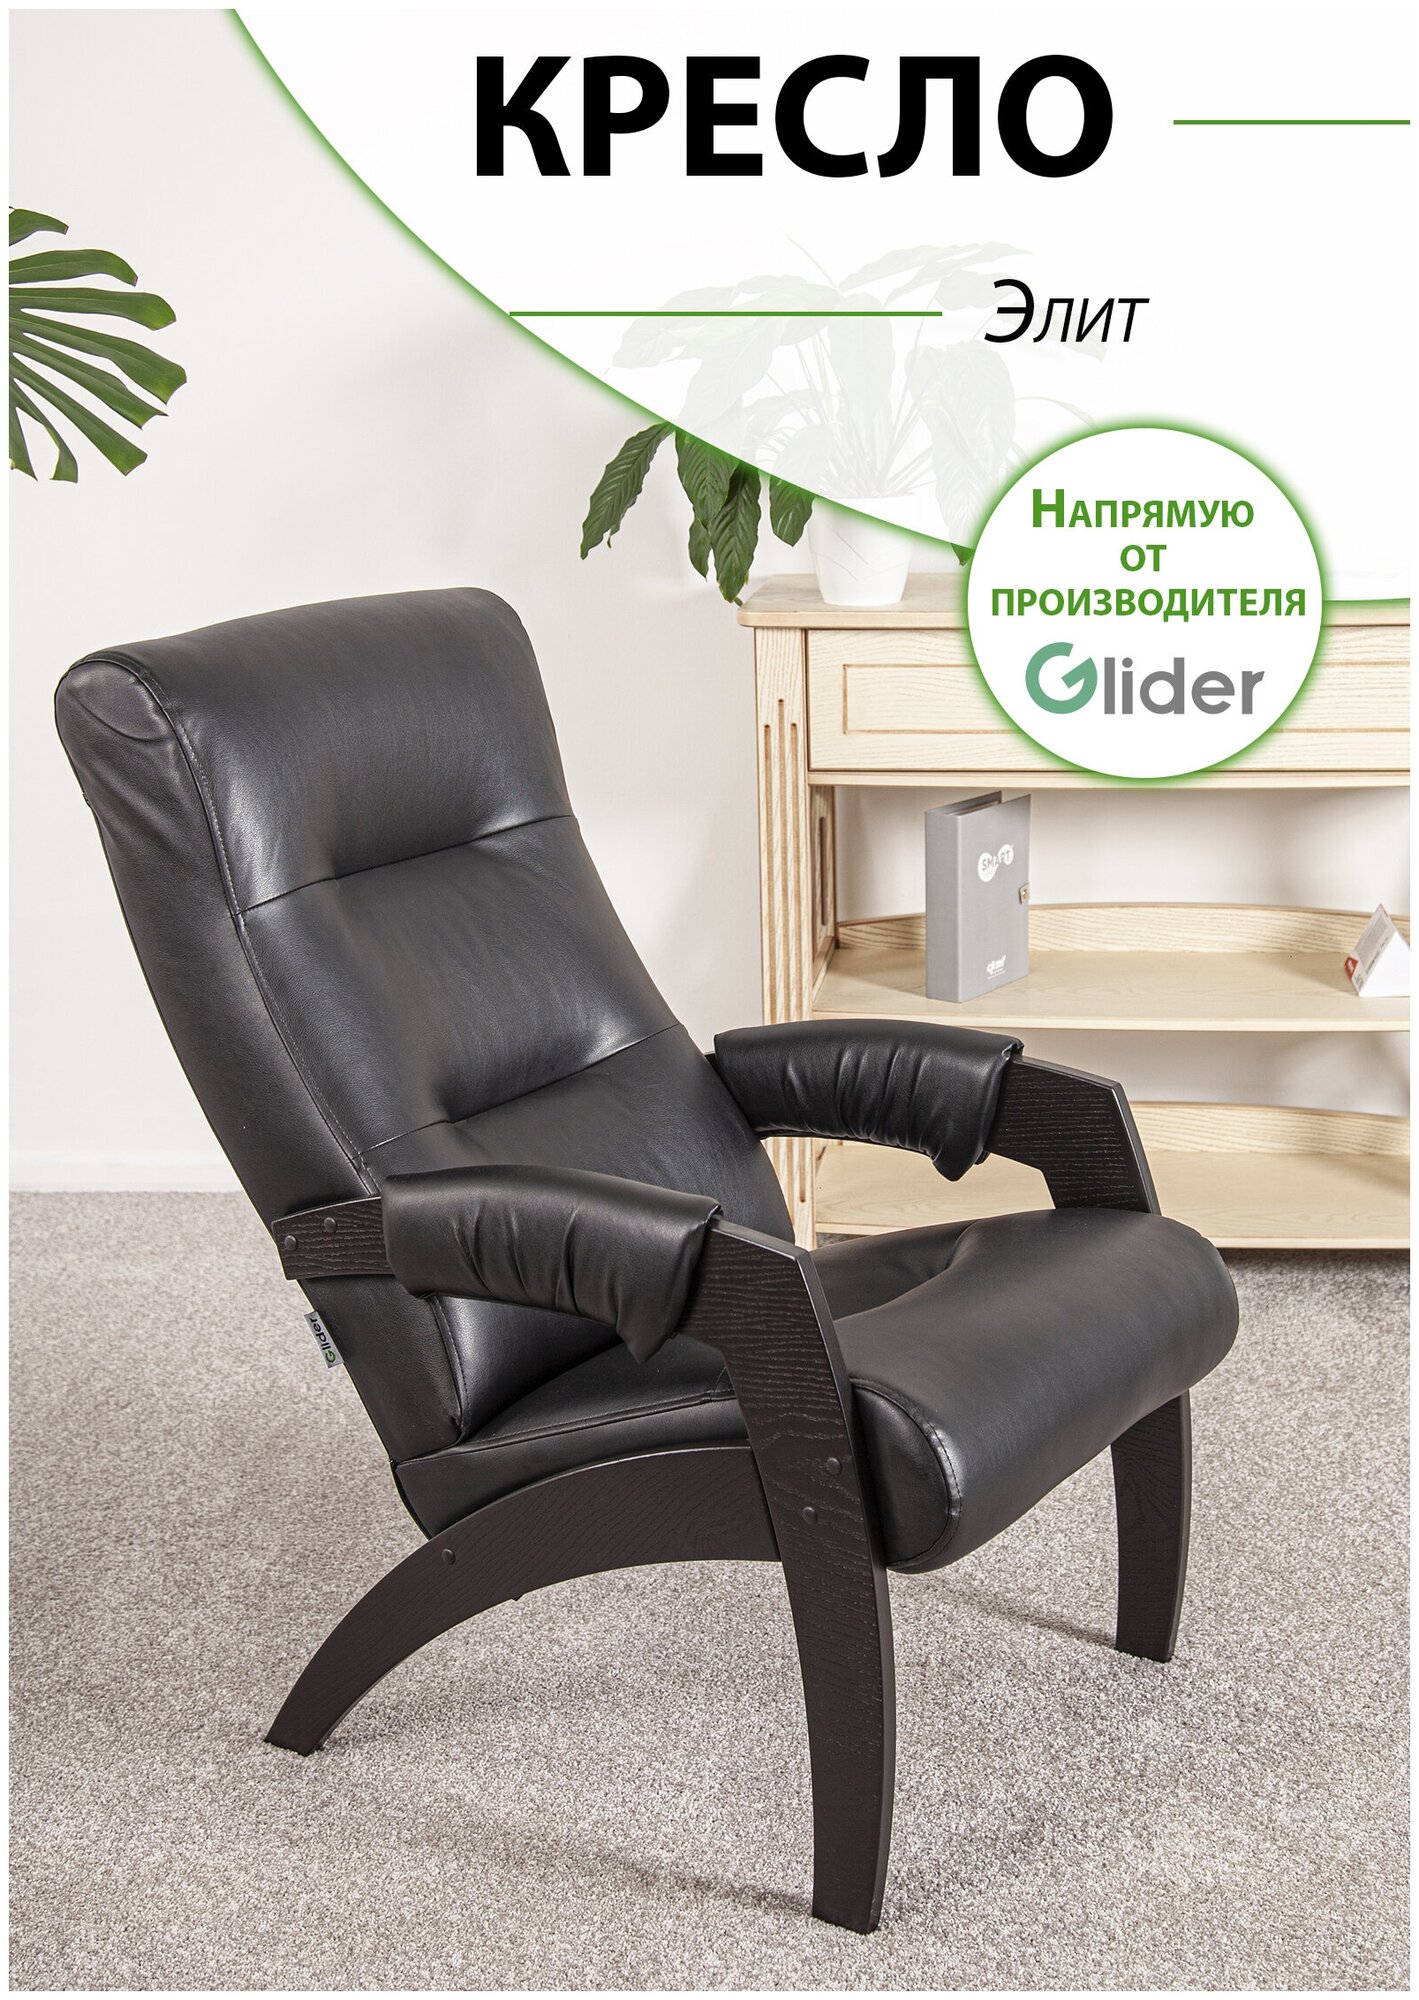 Кресло мягкое для дома и дачи, для отдыха Glider Элит в ткани эко-кожа, цвет черный